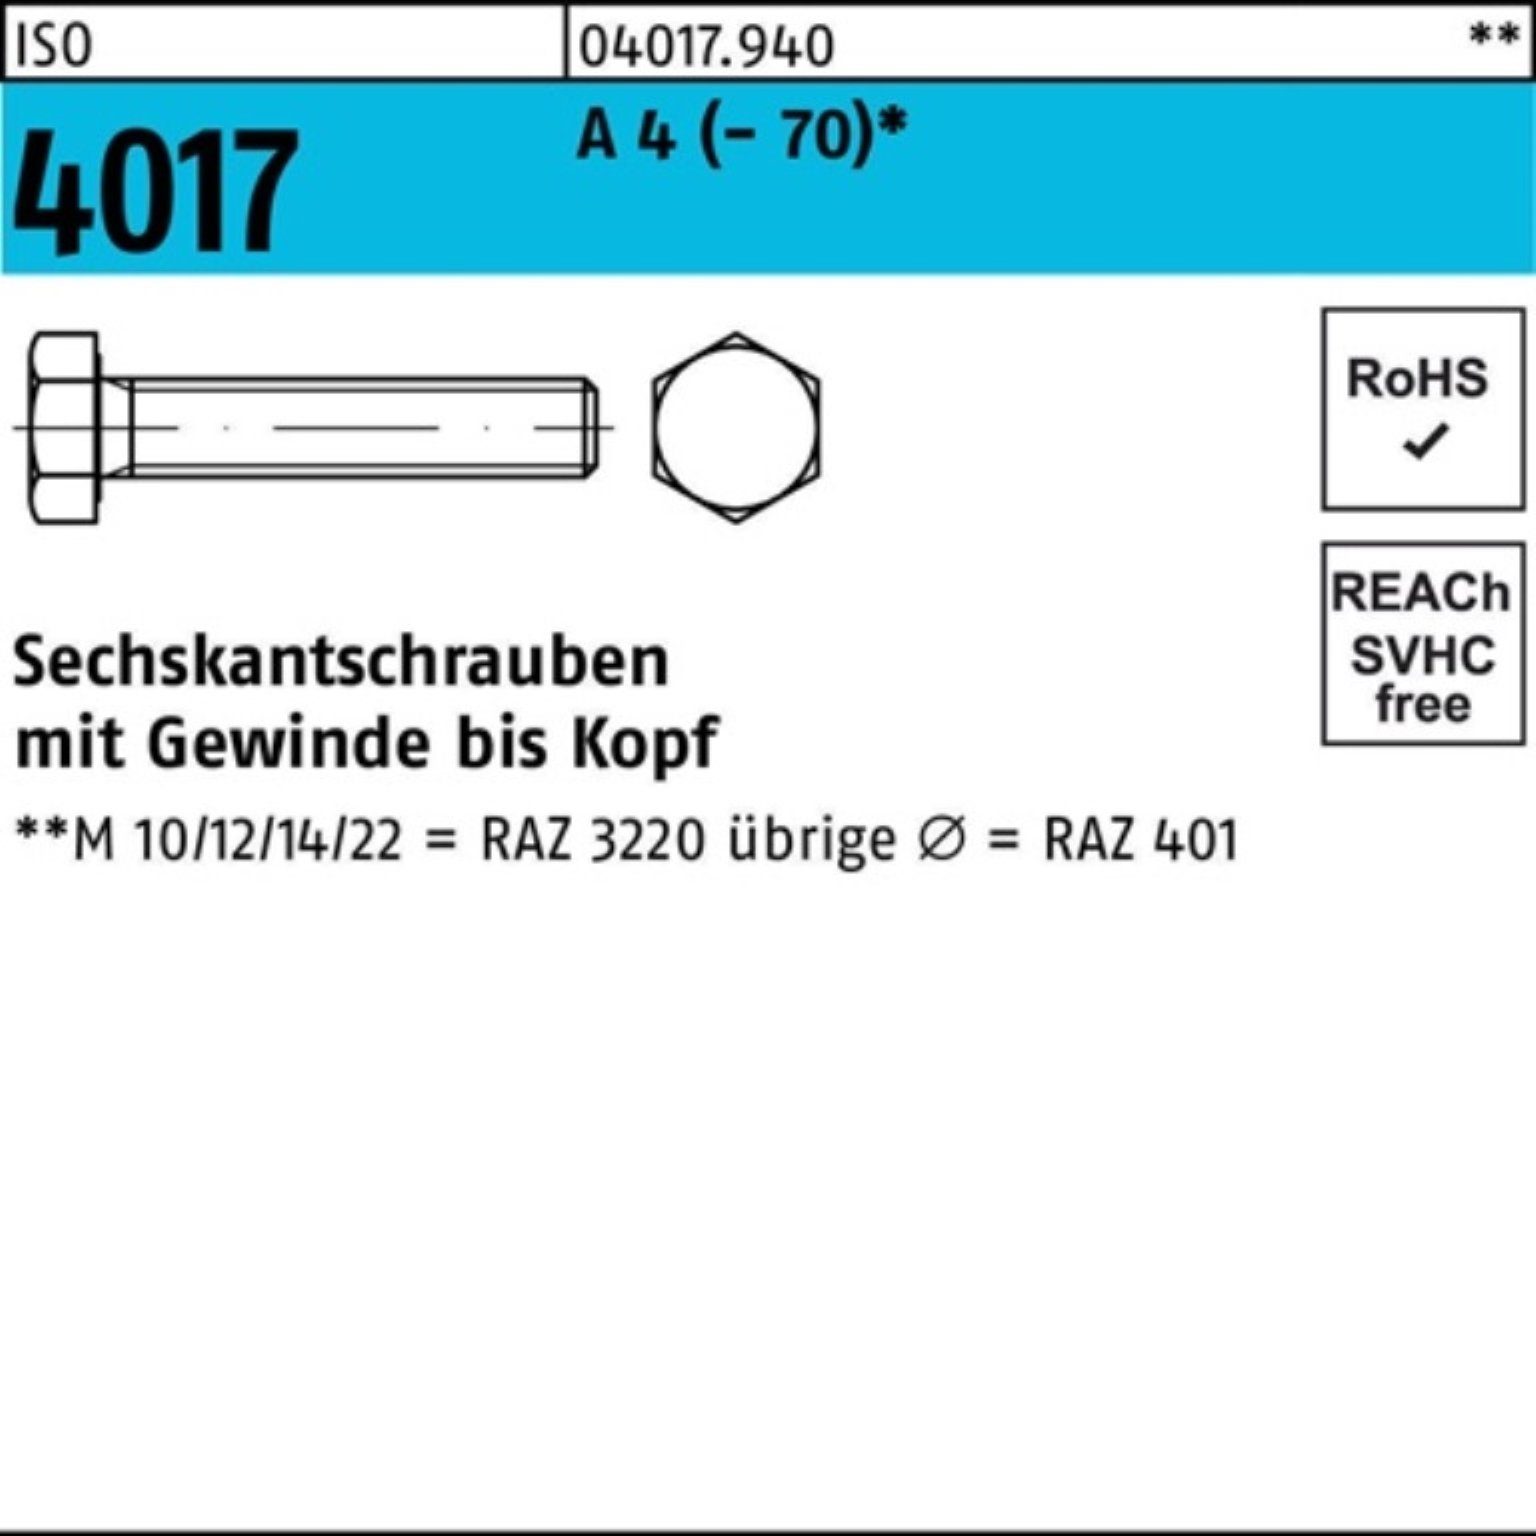 Bufab Sechskantschraube 100er Pack Sechskantschraube ISO 4017 VG M10x 60 A 4 (70) 100 Stück